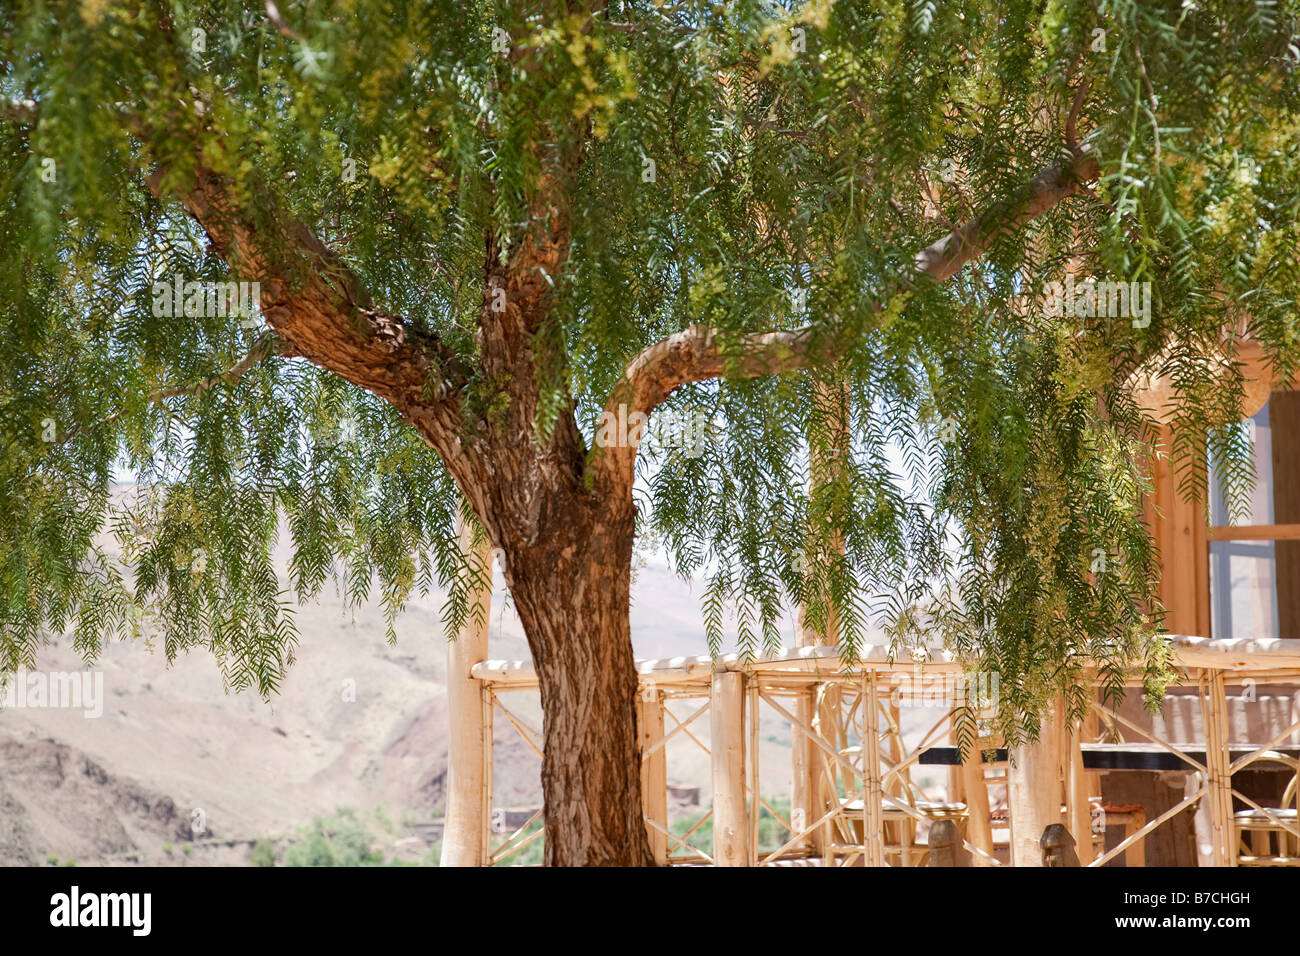 Una struttura ad albero fornisce ombra sulla terrazza del Irocha guest house nel piccolo borgo agricolo in Marocco Atlas Mountains Foto Stock